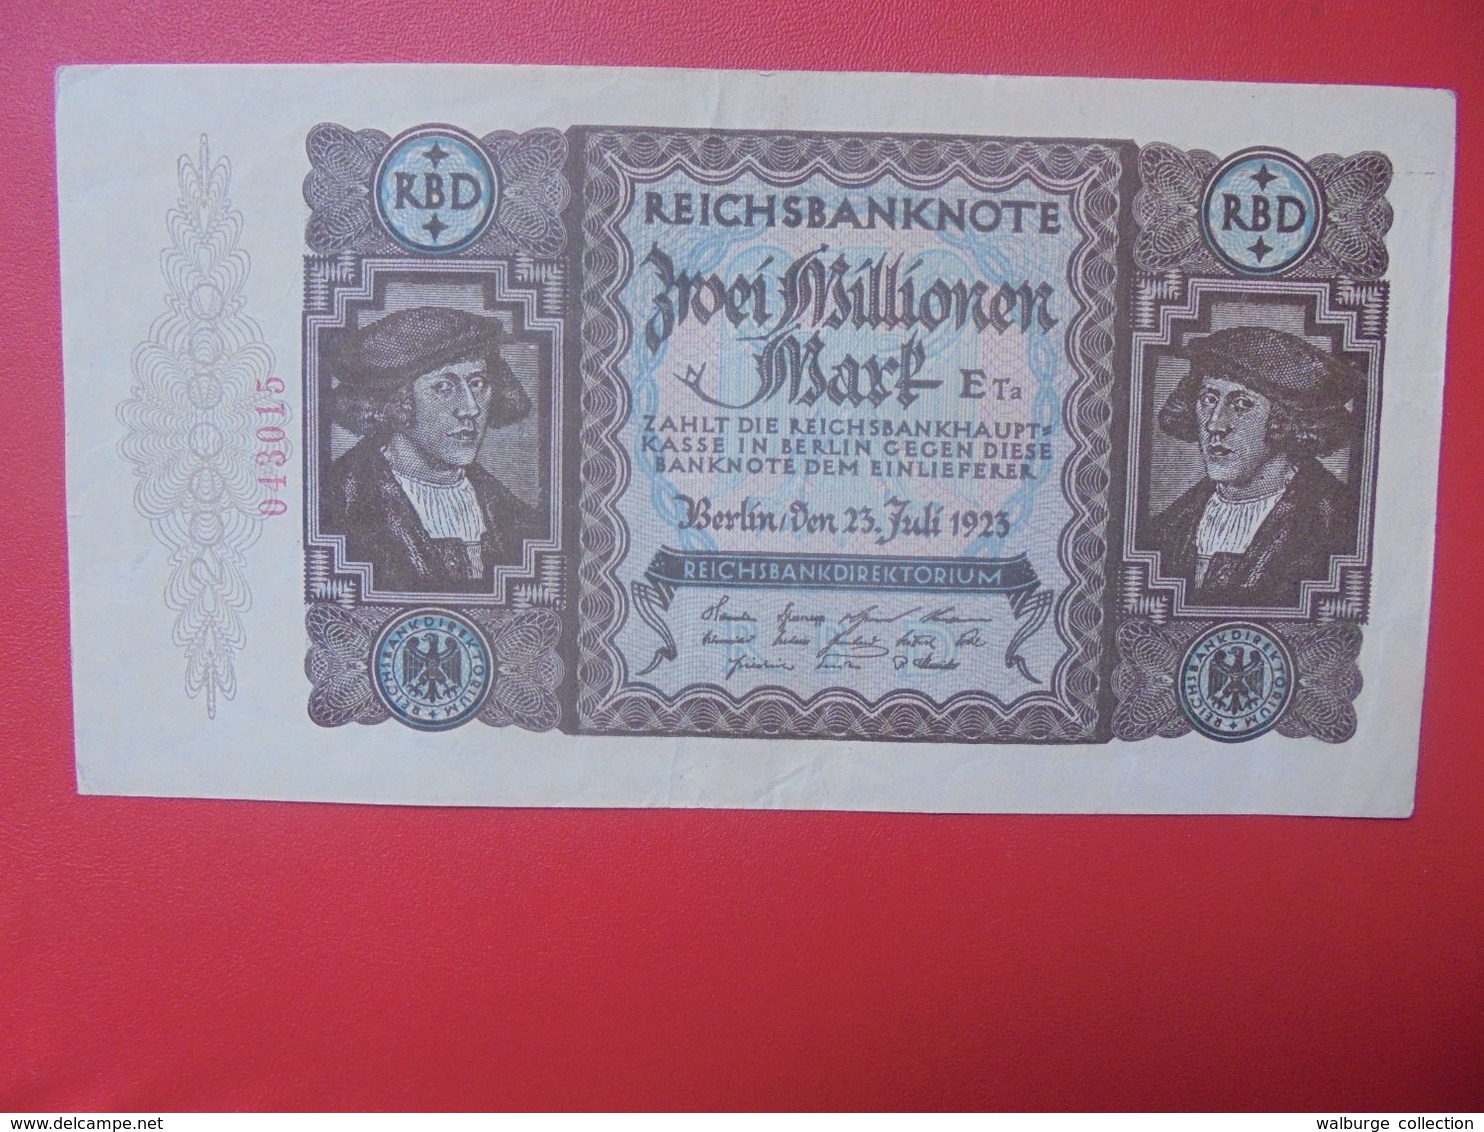 Reichsbanknote 2 MILLIONEN MARK 1923 CIRCULER (B.16) - 2 Millionen Mark